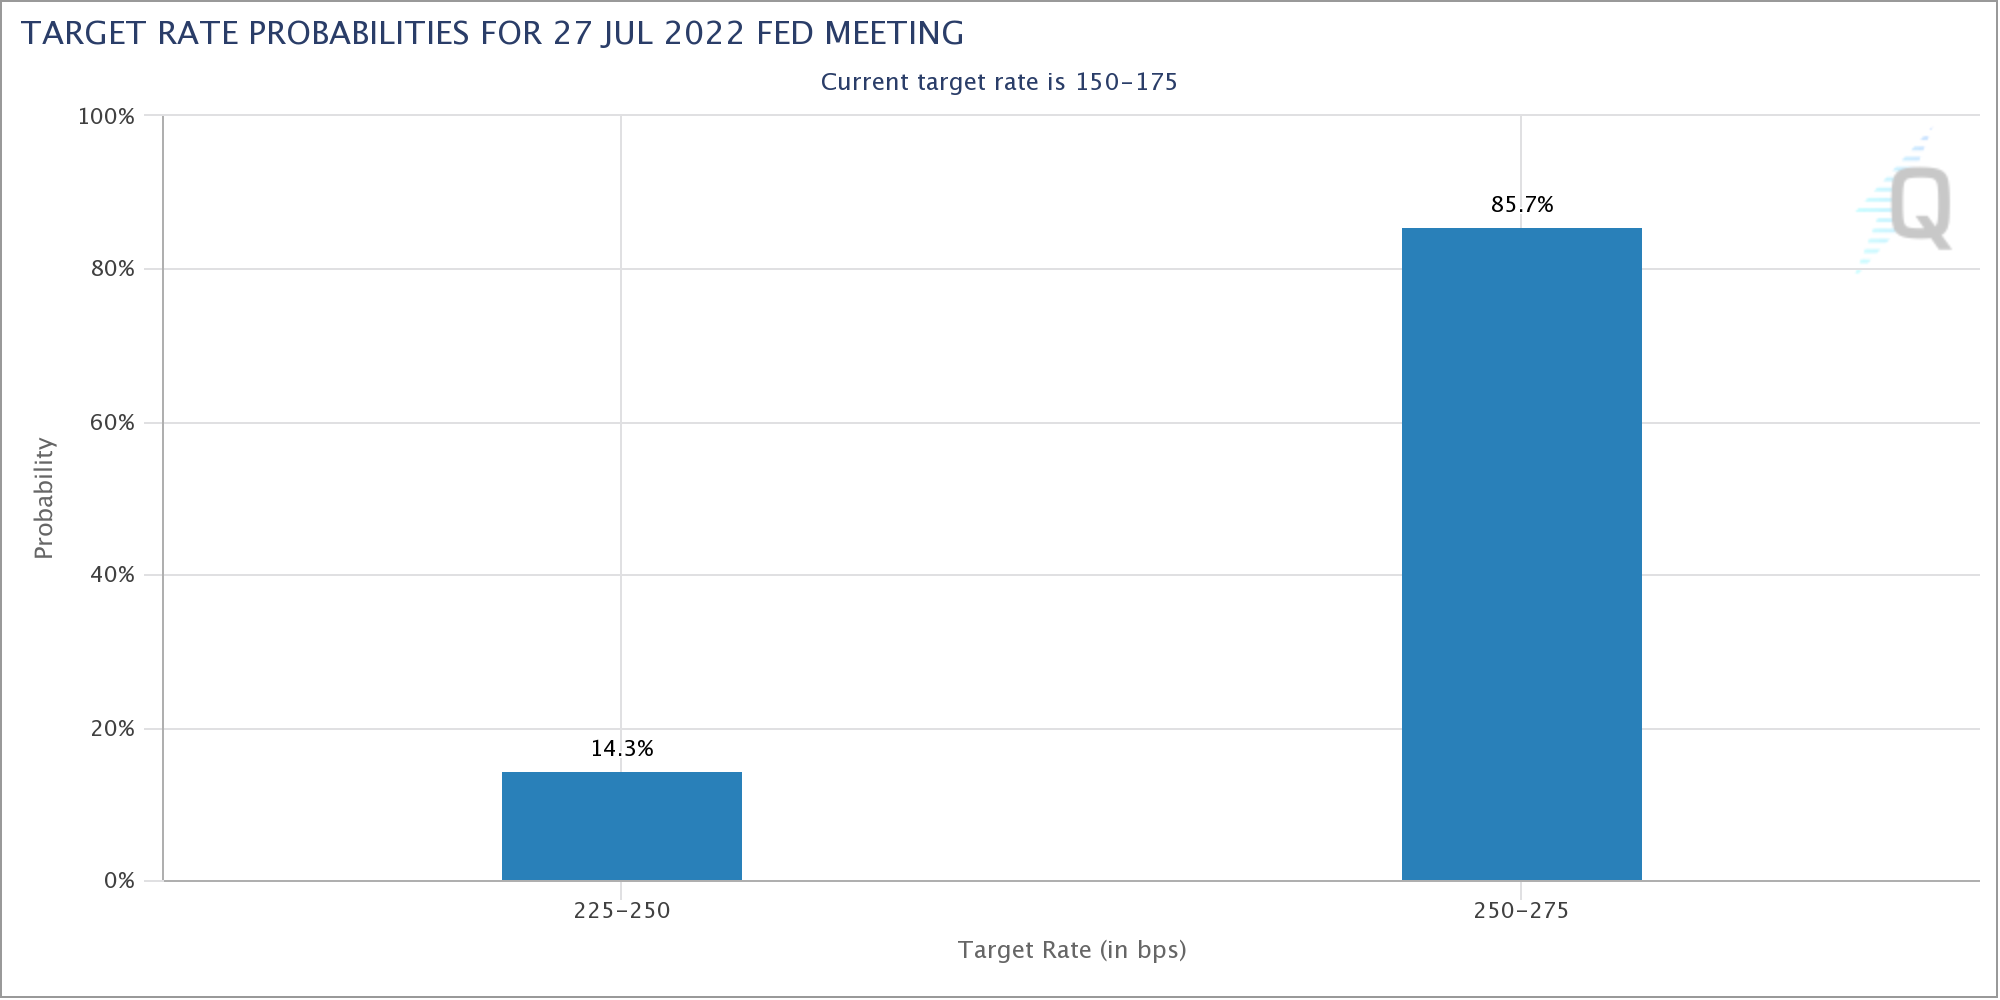 Fed Funds Futures - Leitzinserwartung für Juli 2022